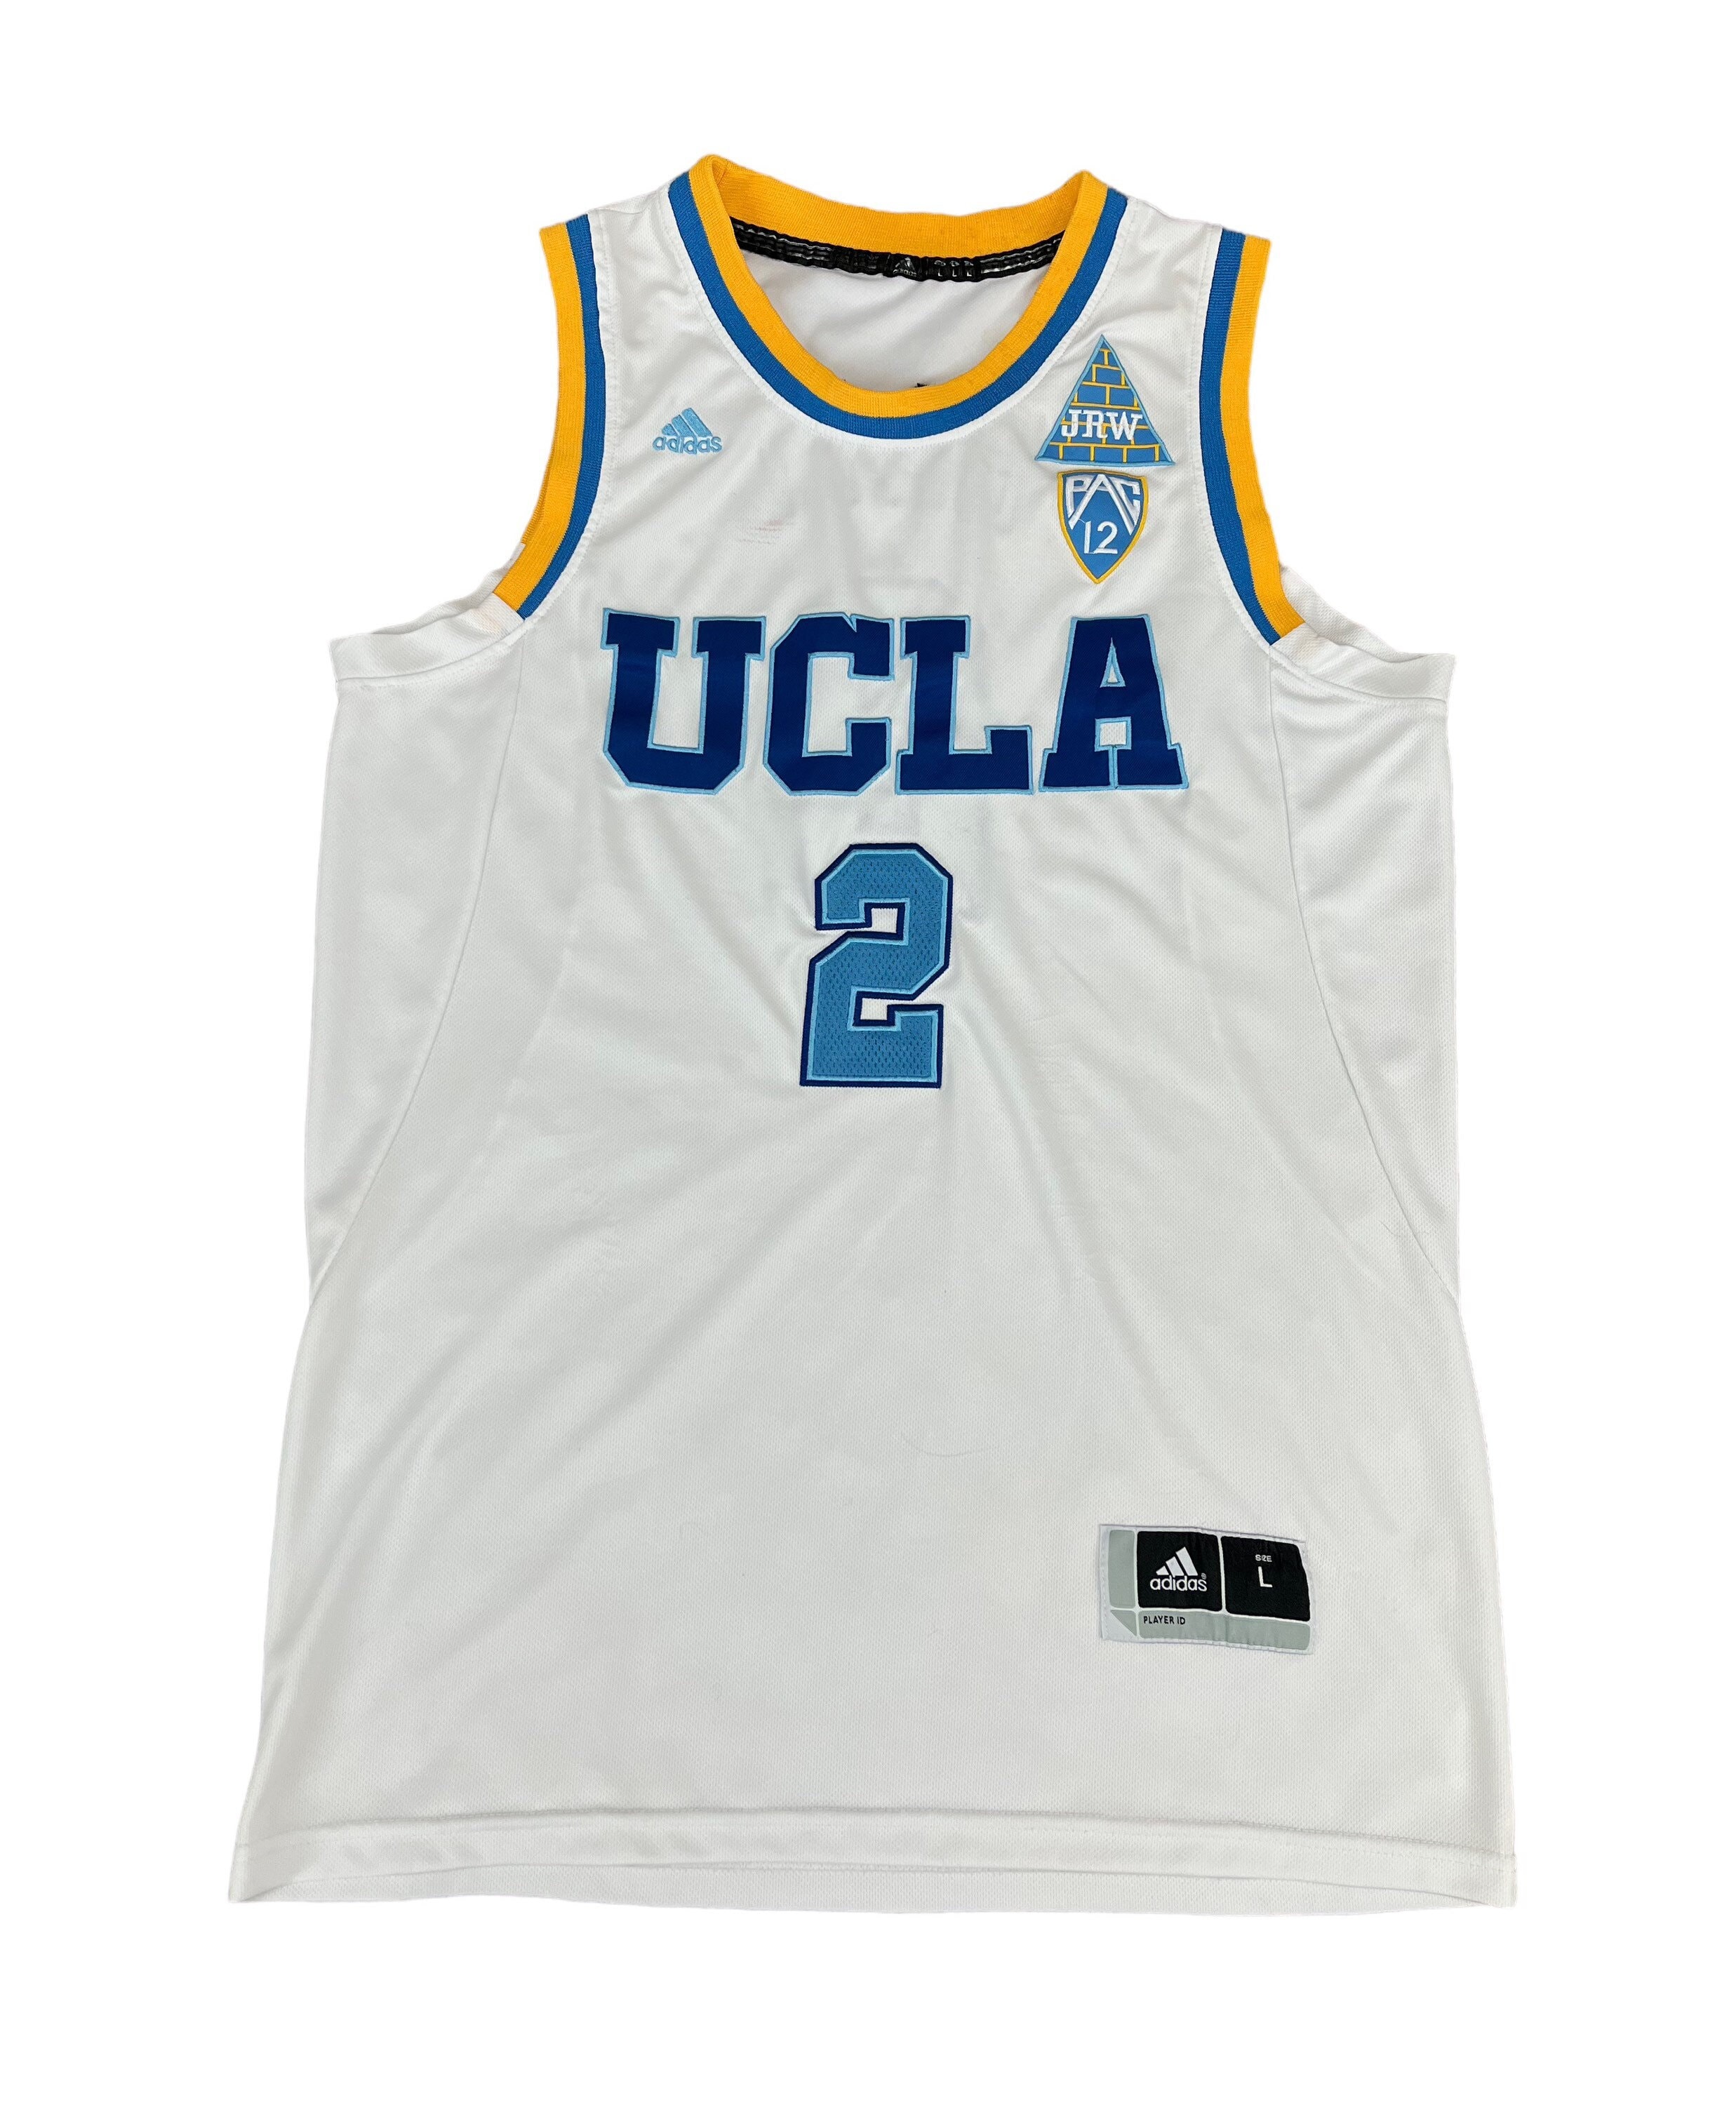 Adidas Lonzo Ball UCLA jersey